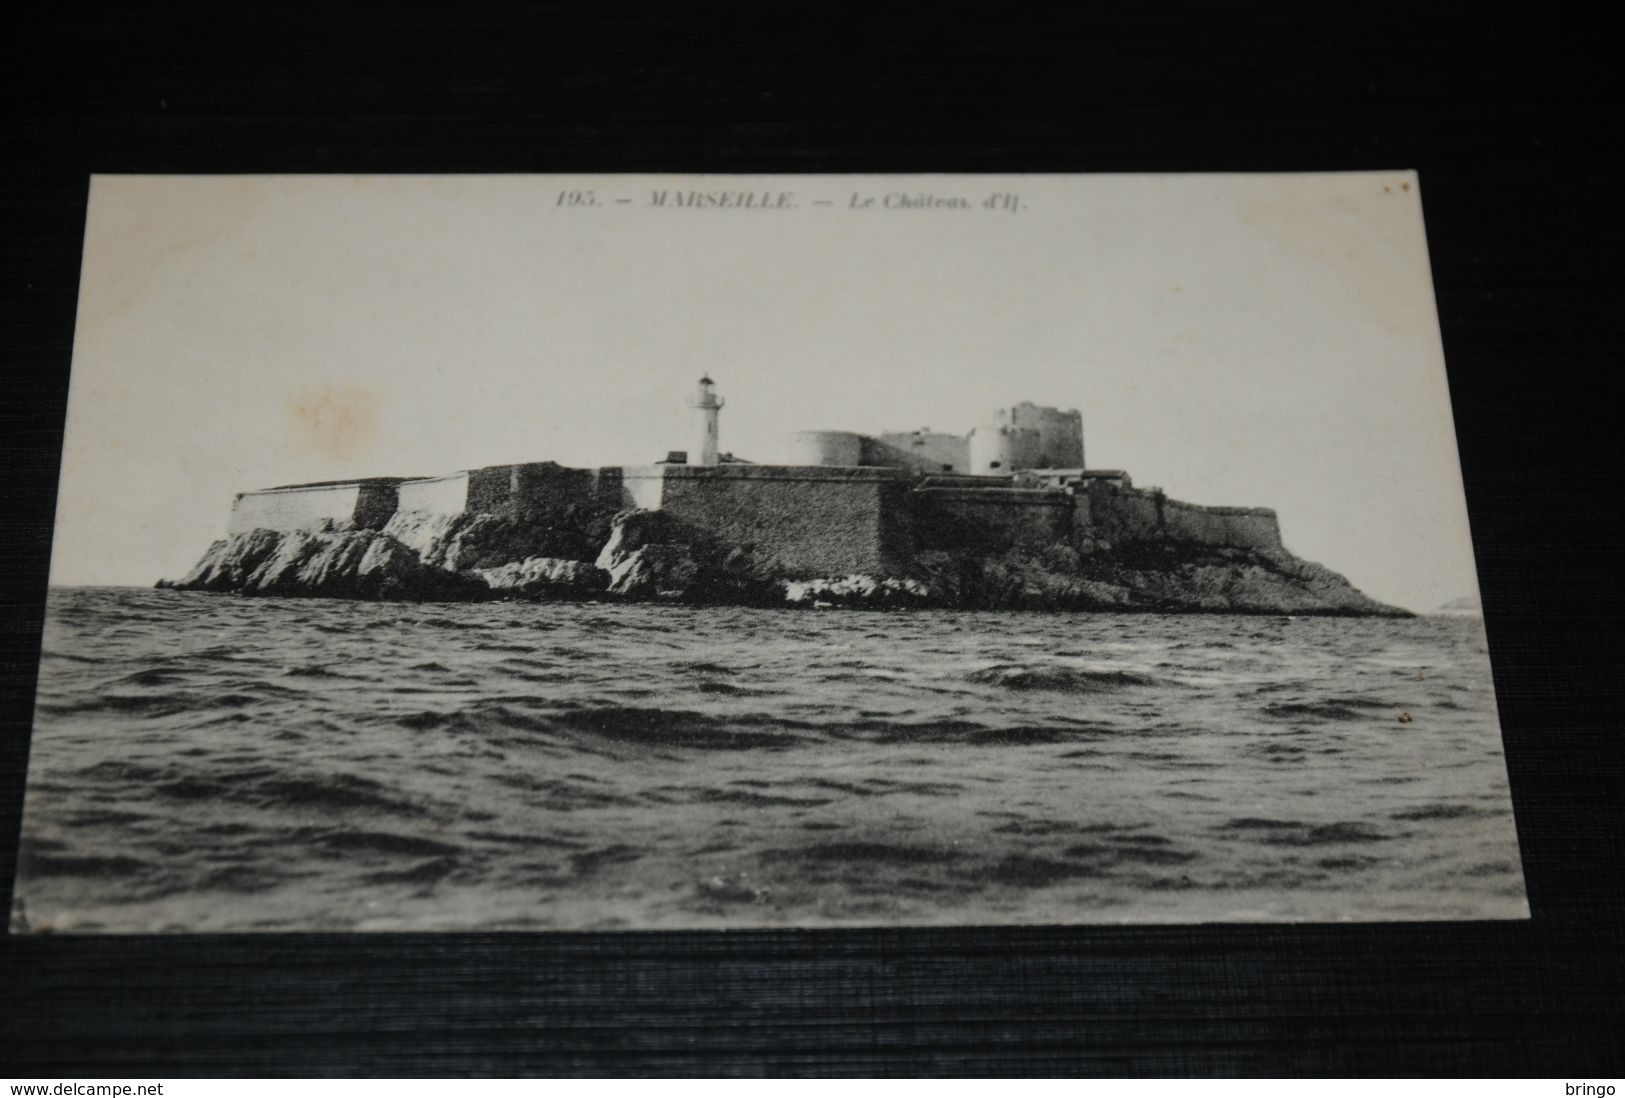 17691-           MARSEILLE, LE CHATEAU D'IL - Festung (Château D'If), Frioul, Inseln...